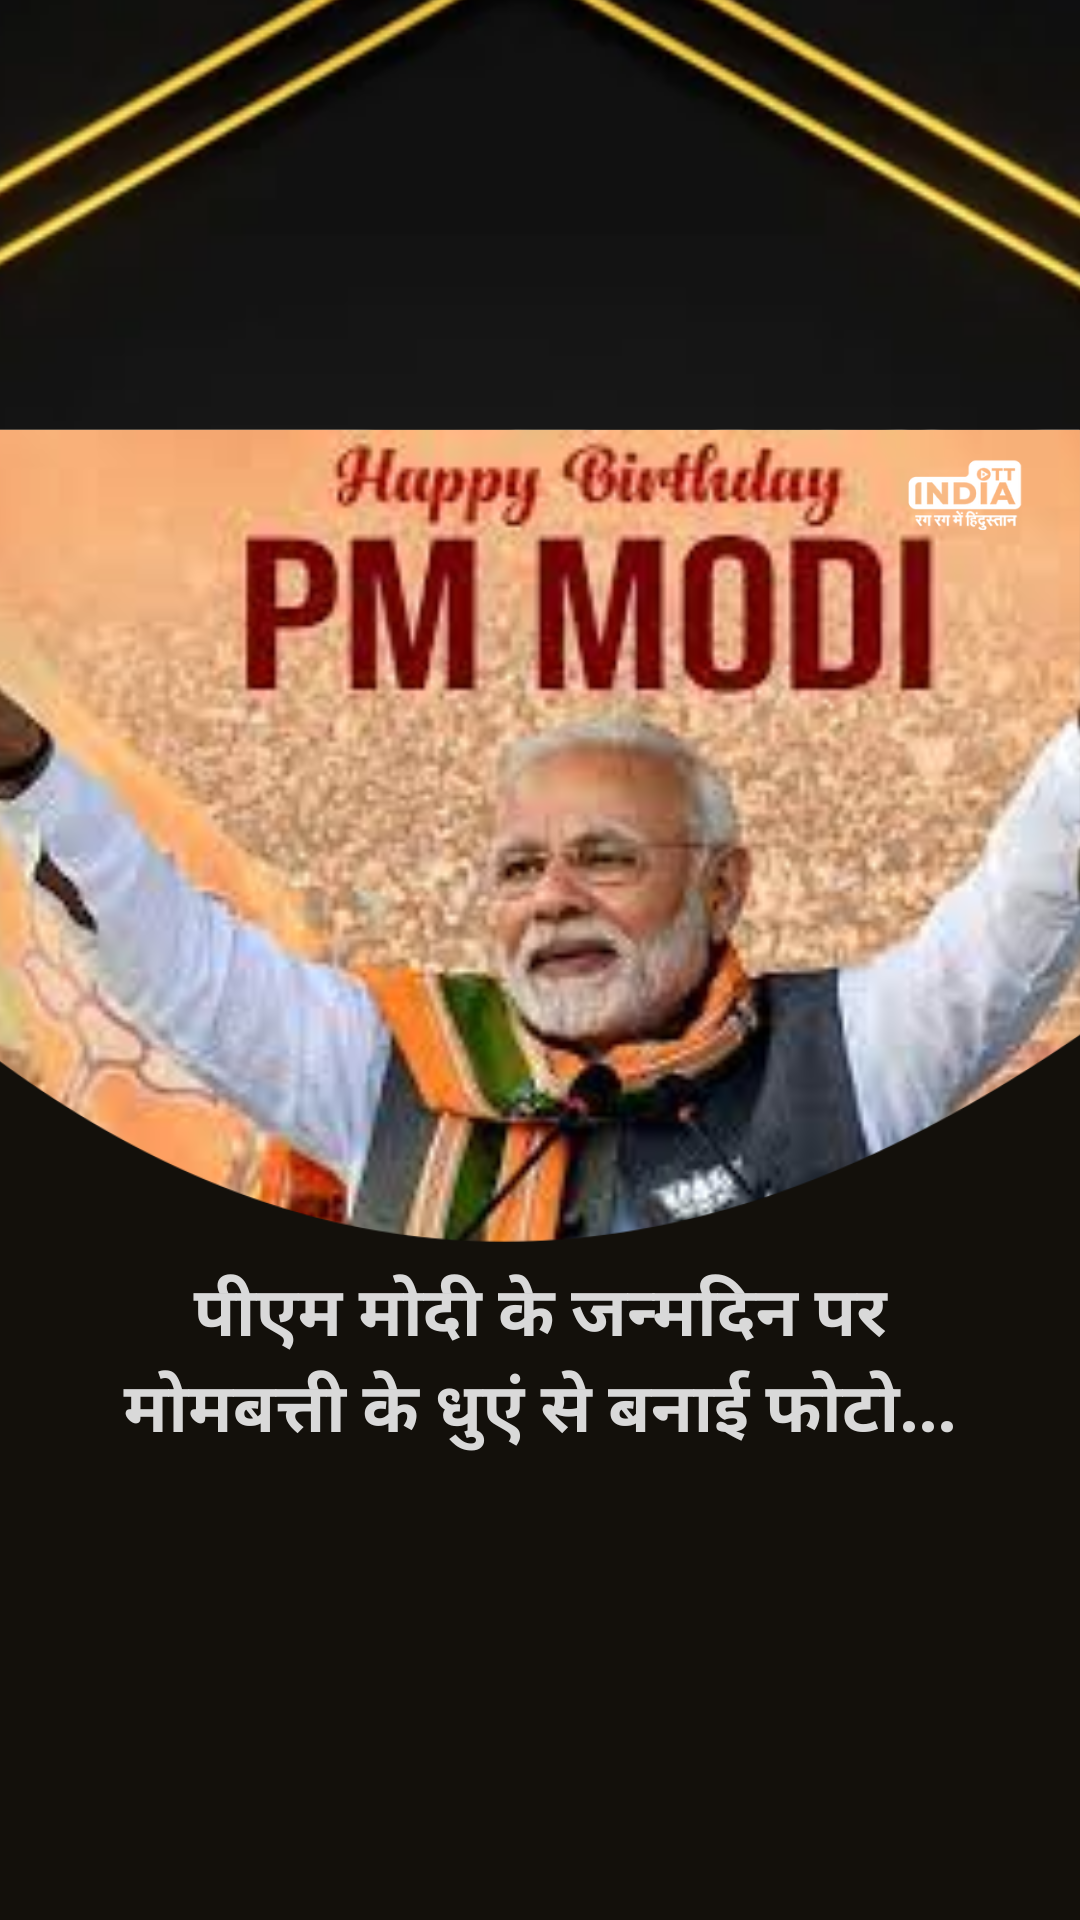 PM Modi Birthday: आज पीएम मोदी का 73वां जन्मदिन, कटक के कलाकार ने मोमबत्ती के धुएं से बनाई प्रतिमा